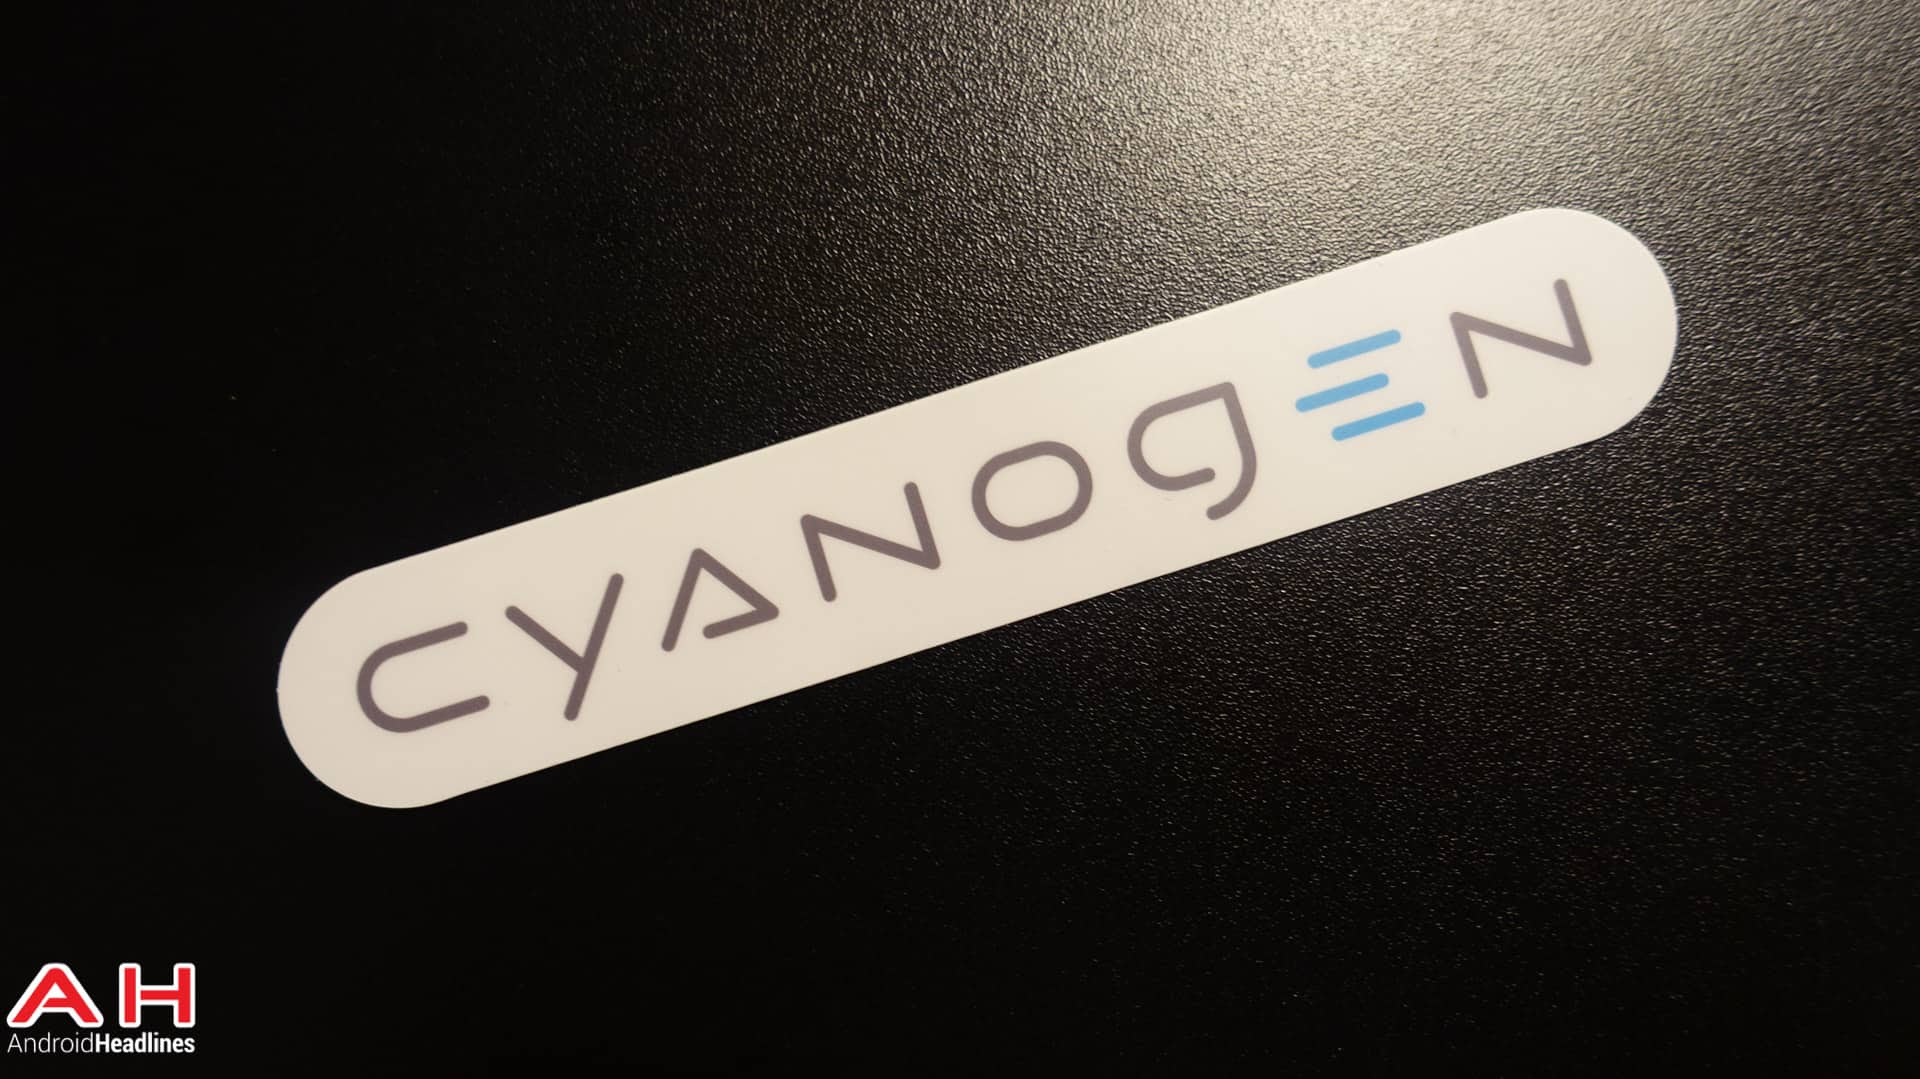 Cyanogen OS 12